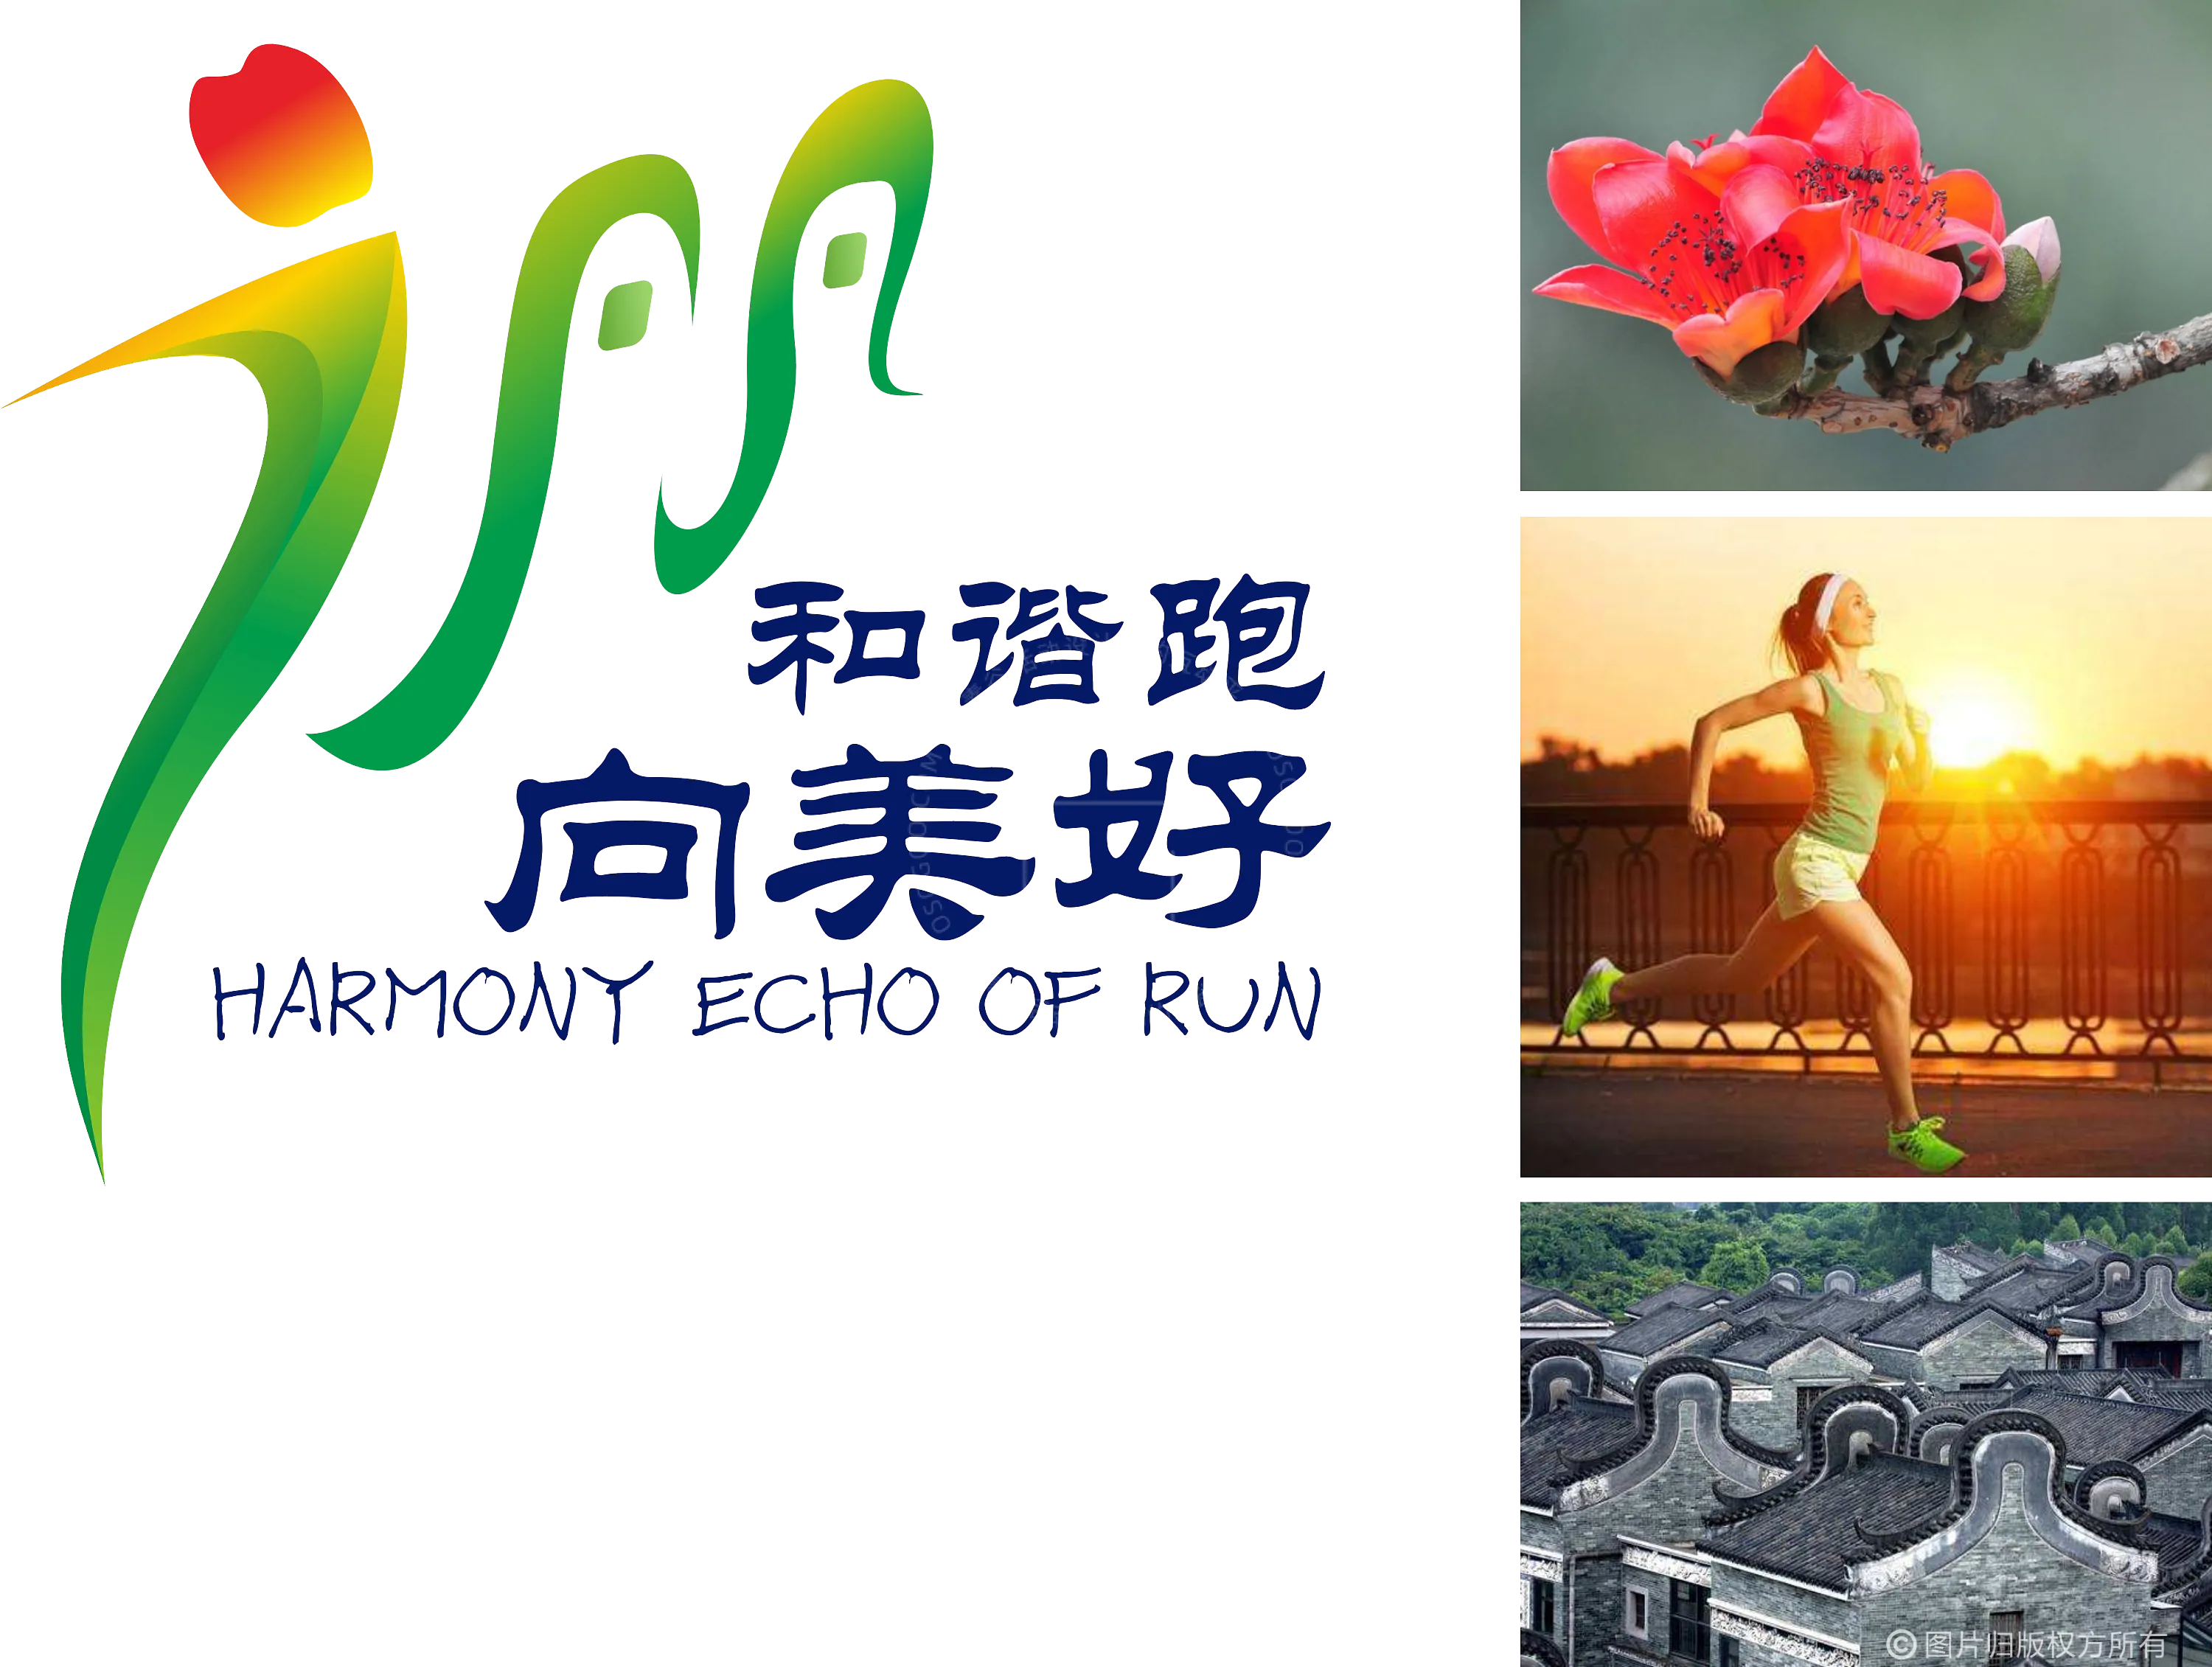 2019年-广汽丰田广州马拉松赛